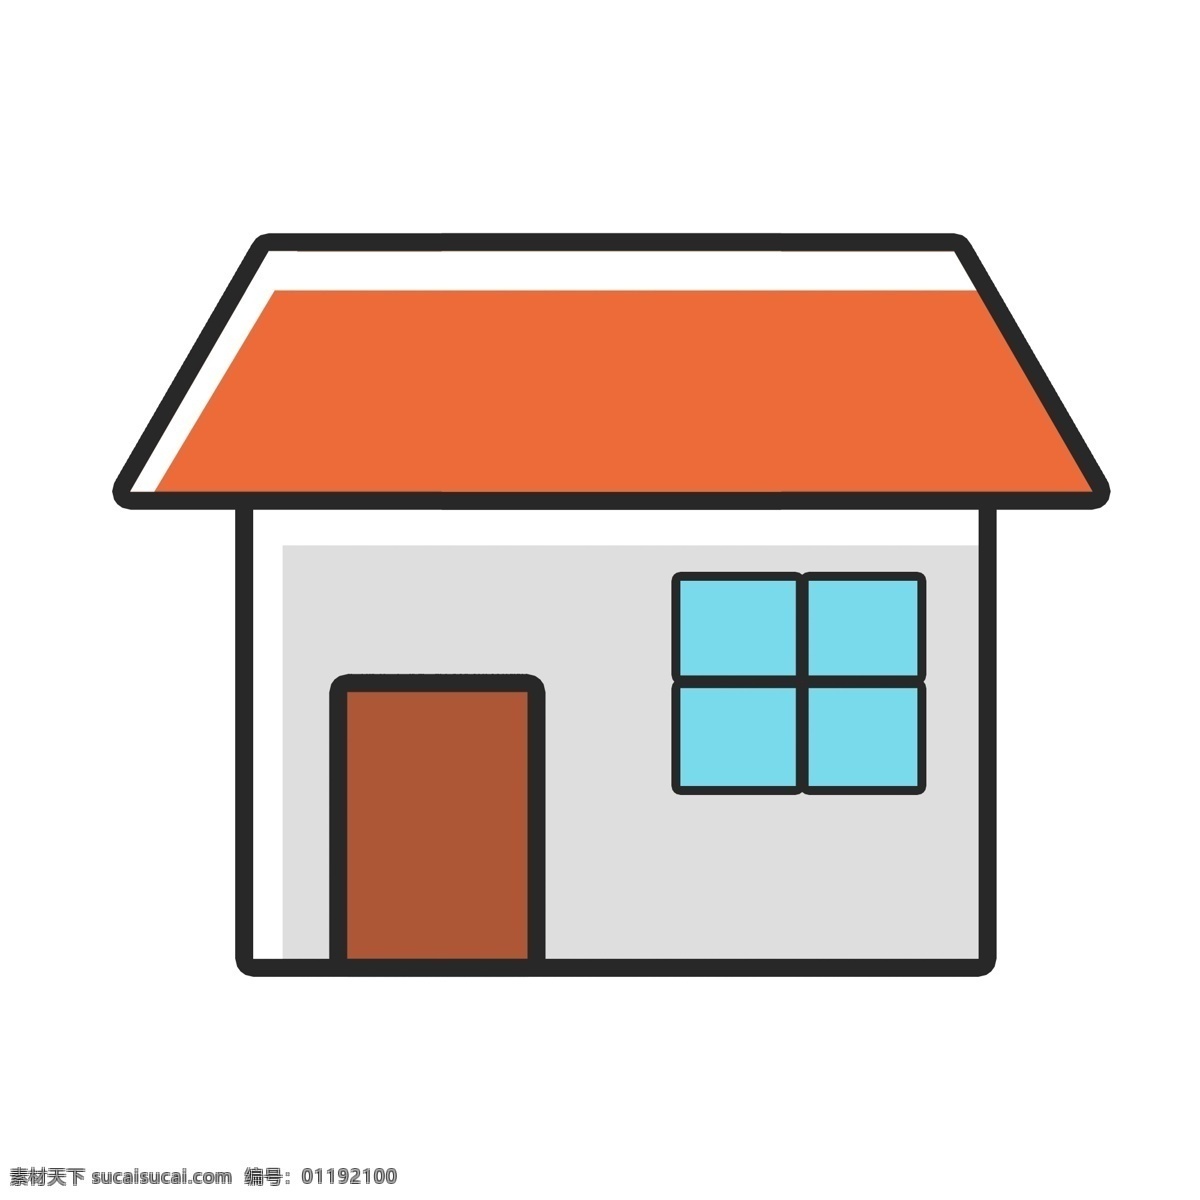 卡通 房屋 图标 矢量图案 彩色底纹 扁平化 小房子 家居